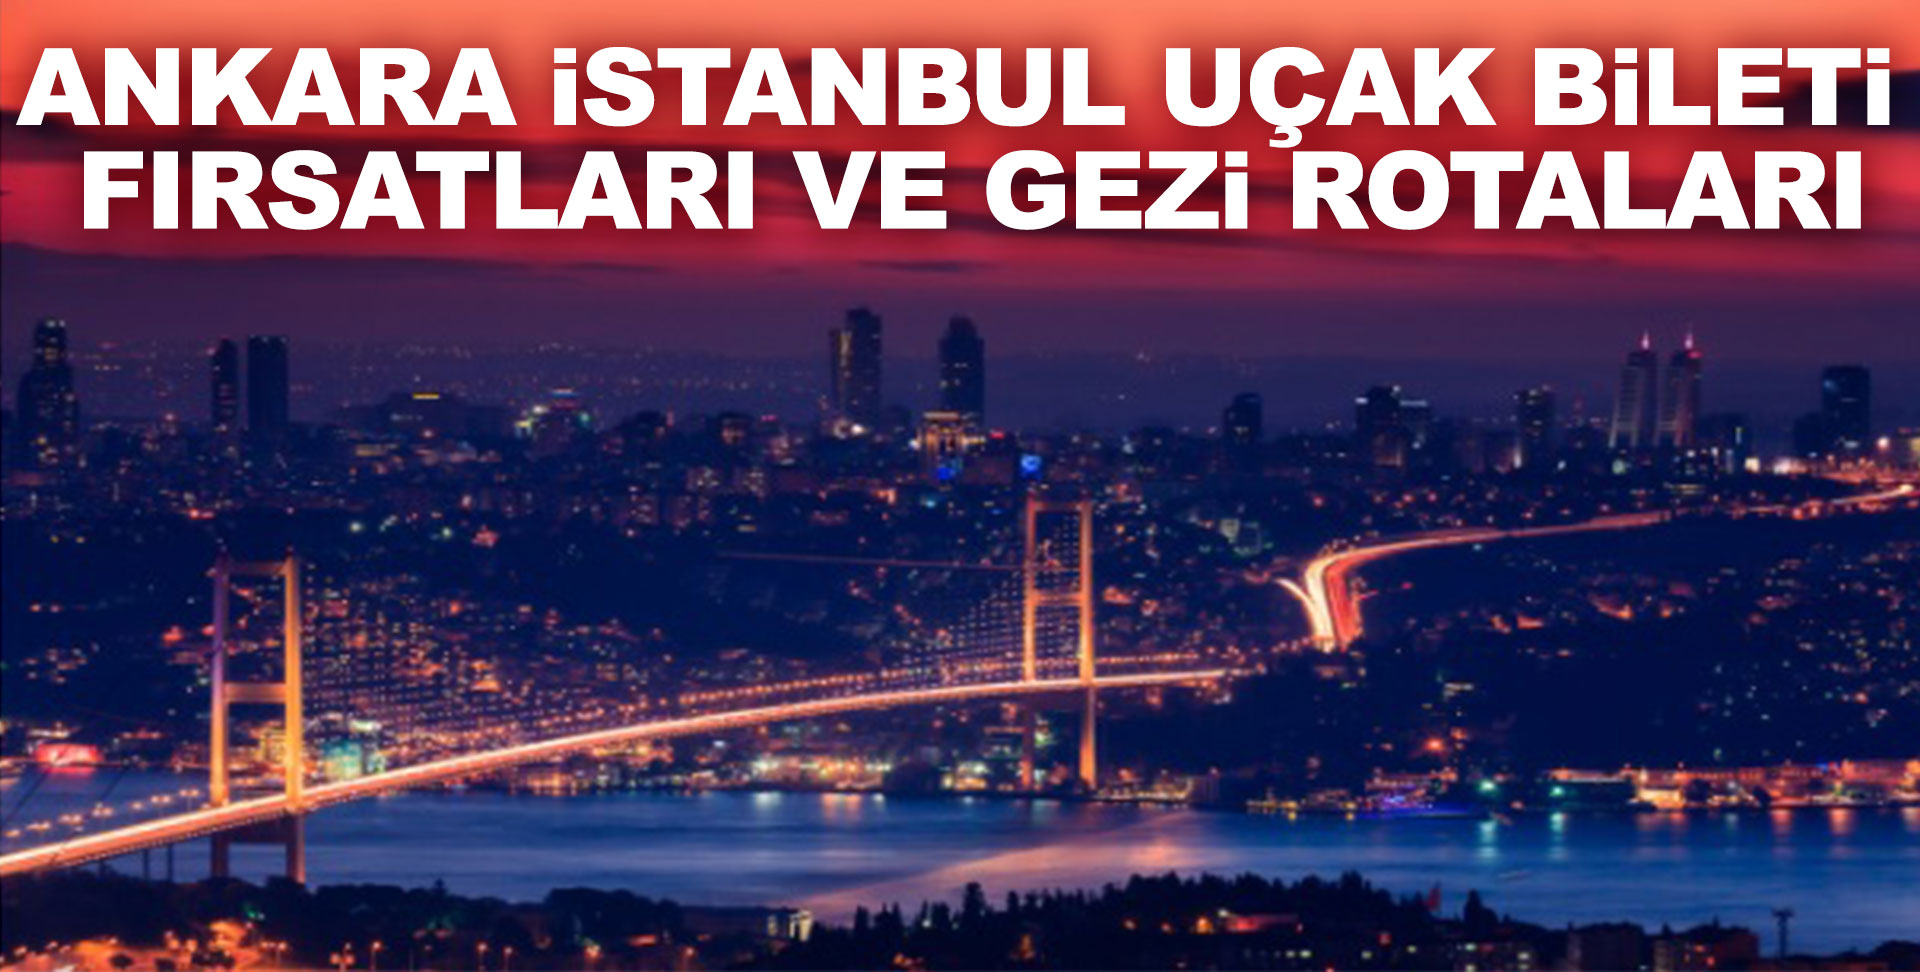 Ankara İstanbul Uçak Bileti Fırsatları ve Gezi Rotaları